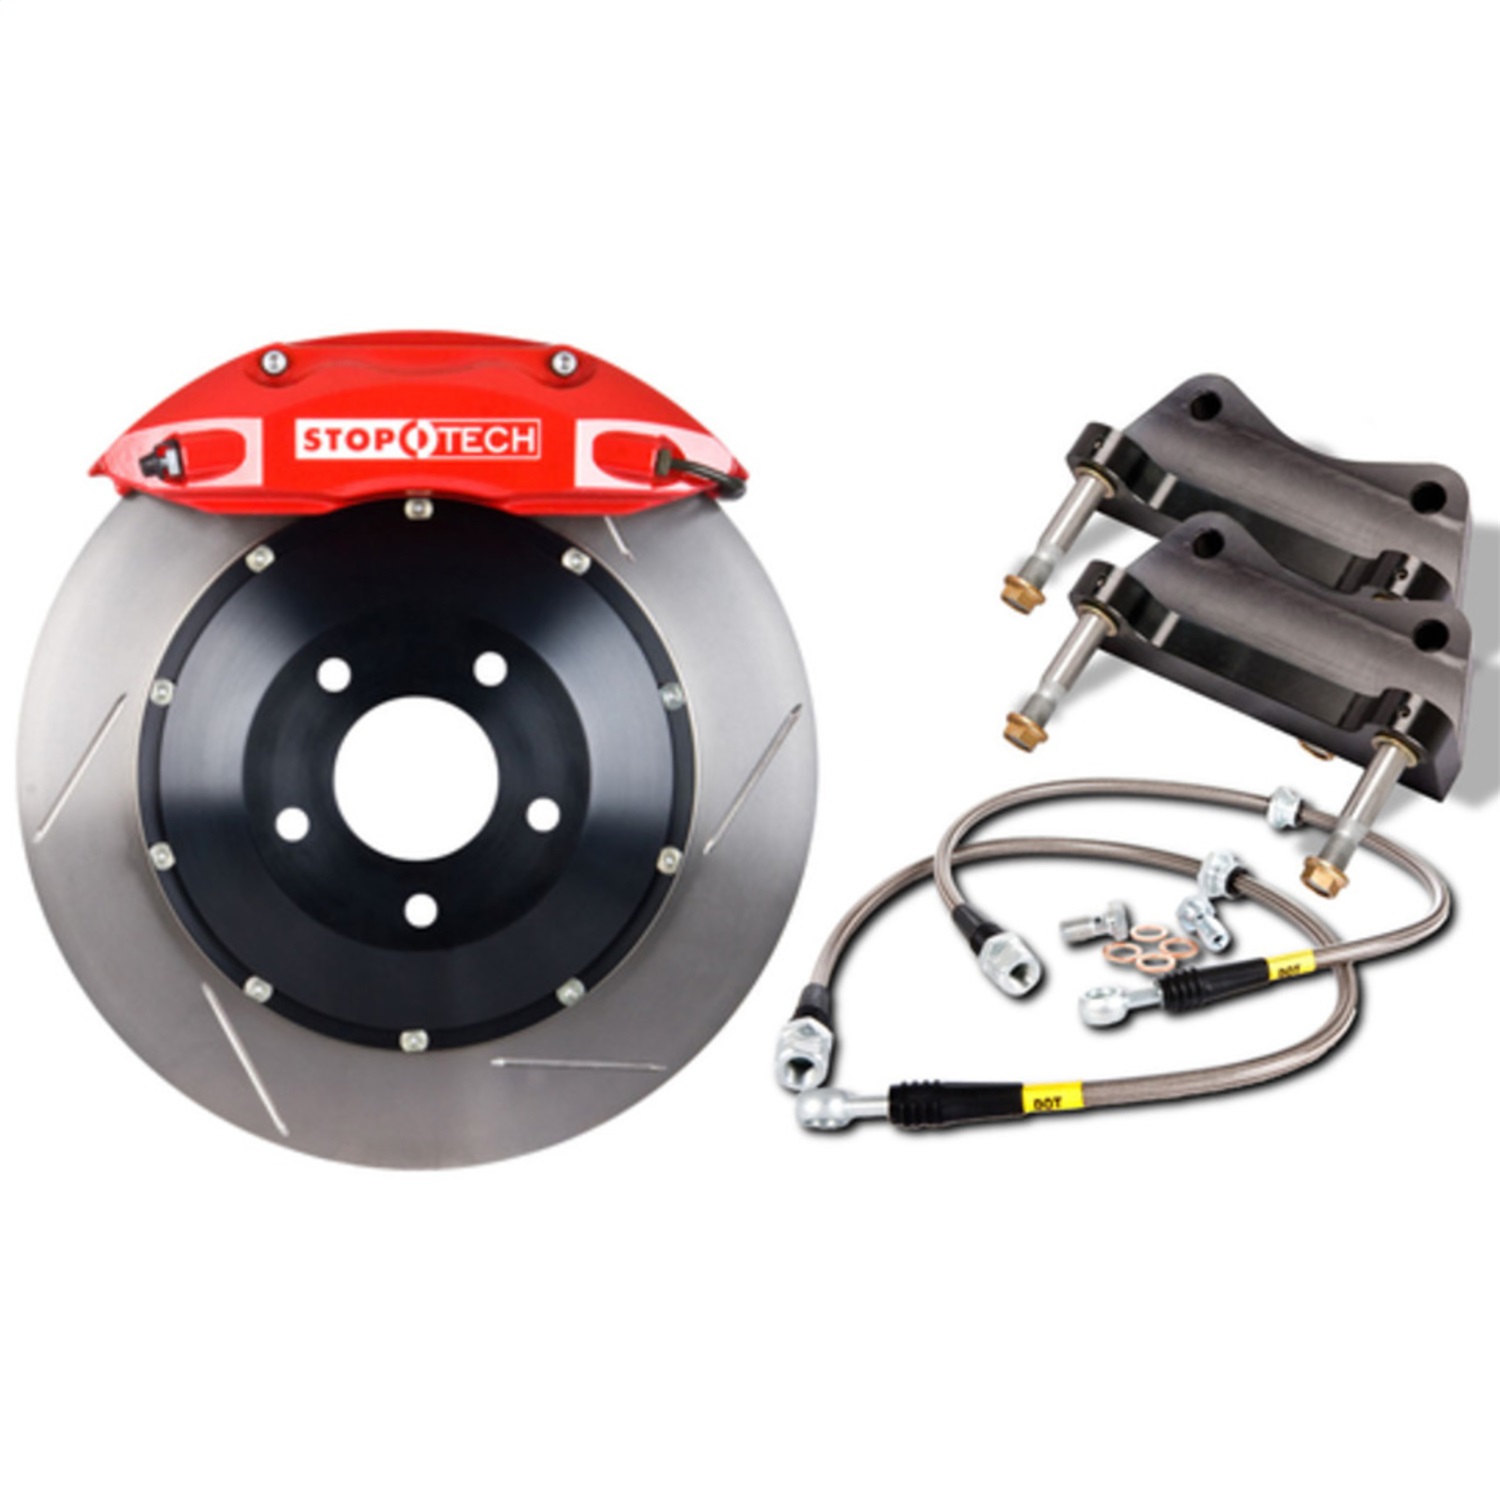 StopTech 83.548.4700.71 Big Brake Kit w/2 Piece Rotors Fits 04-11 RX-8